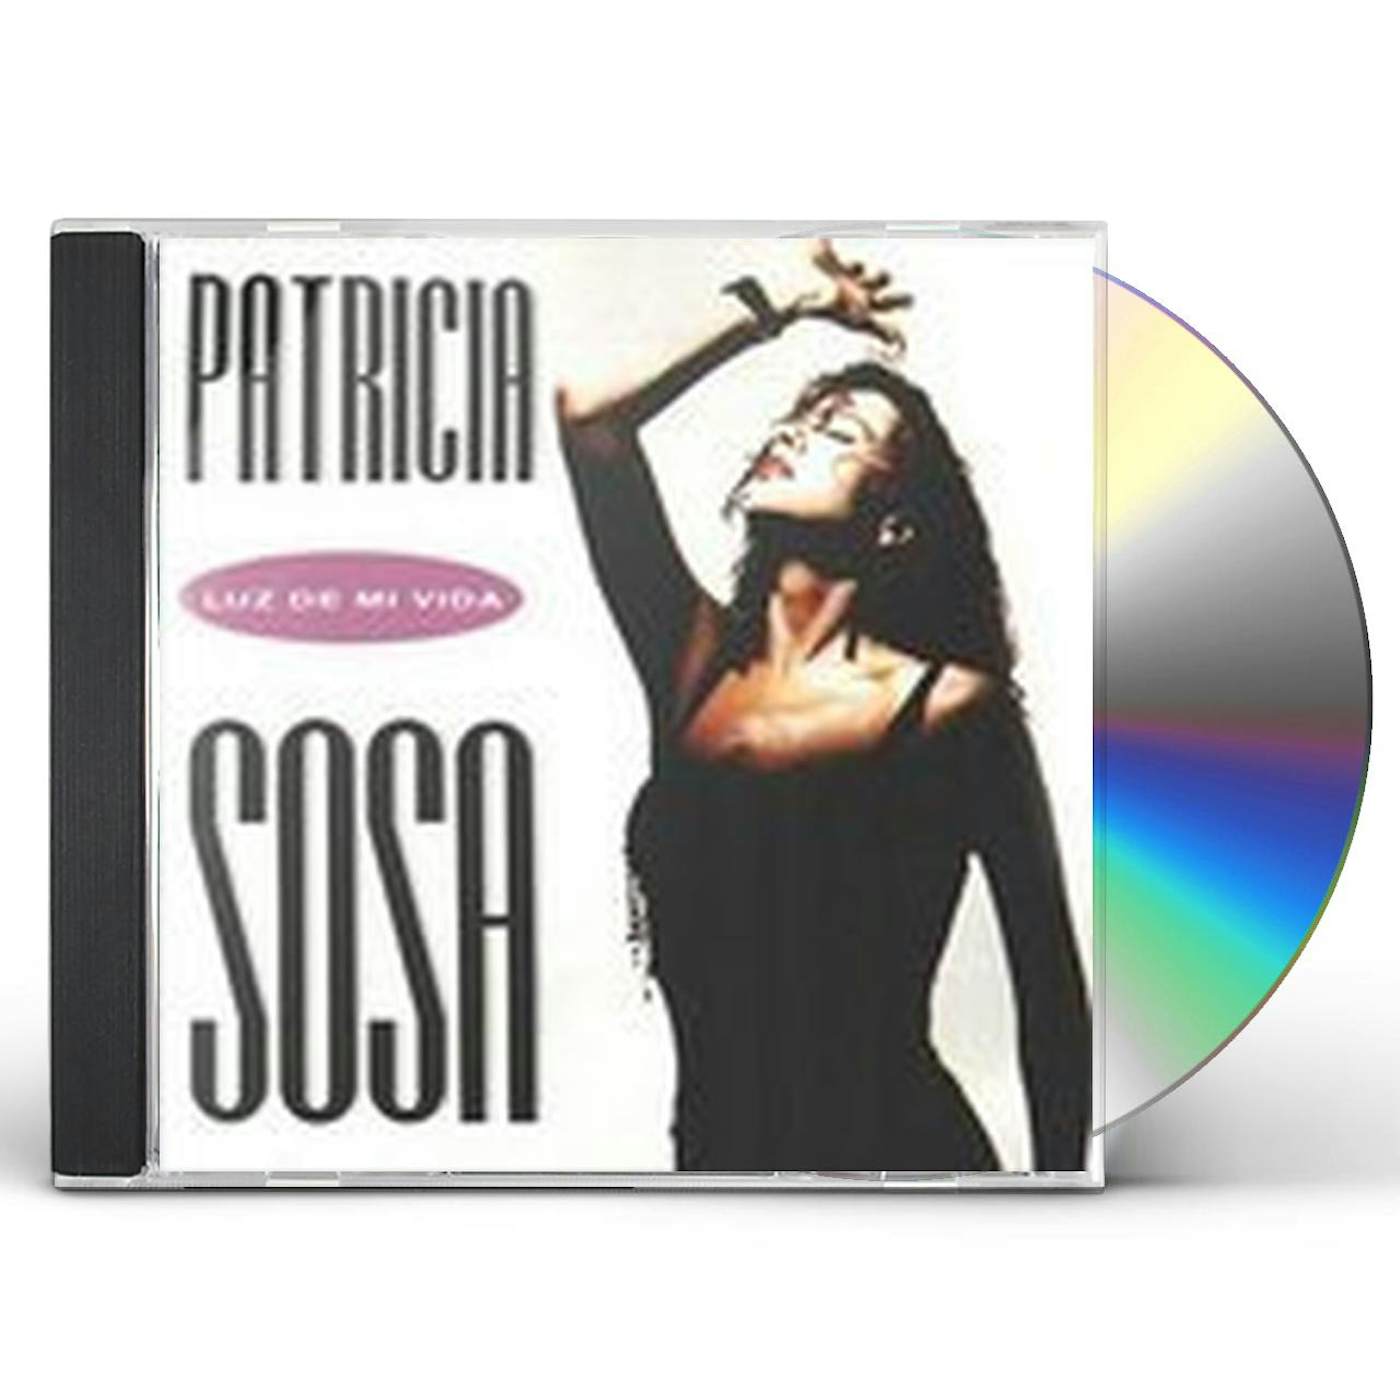 Patricia Sosa LUZ DE MI VIDA CD